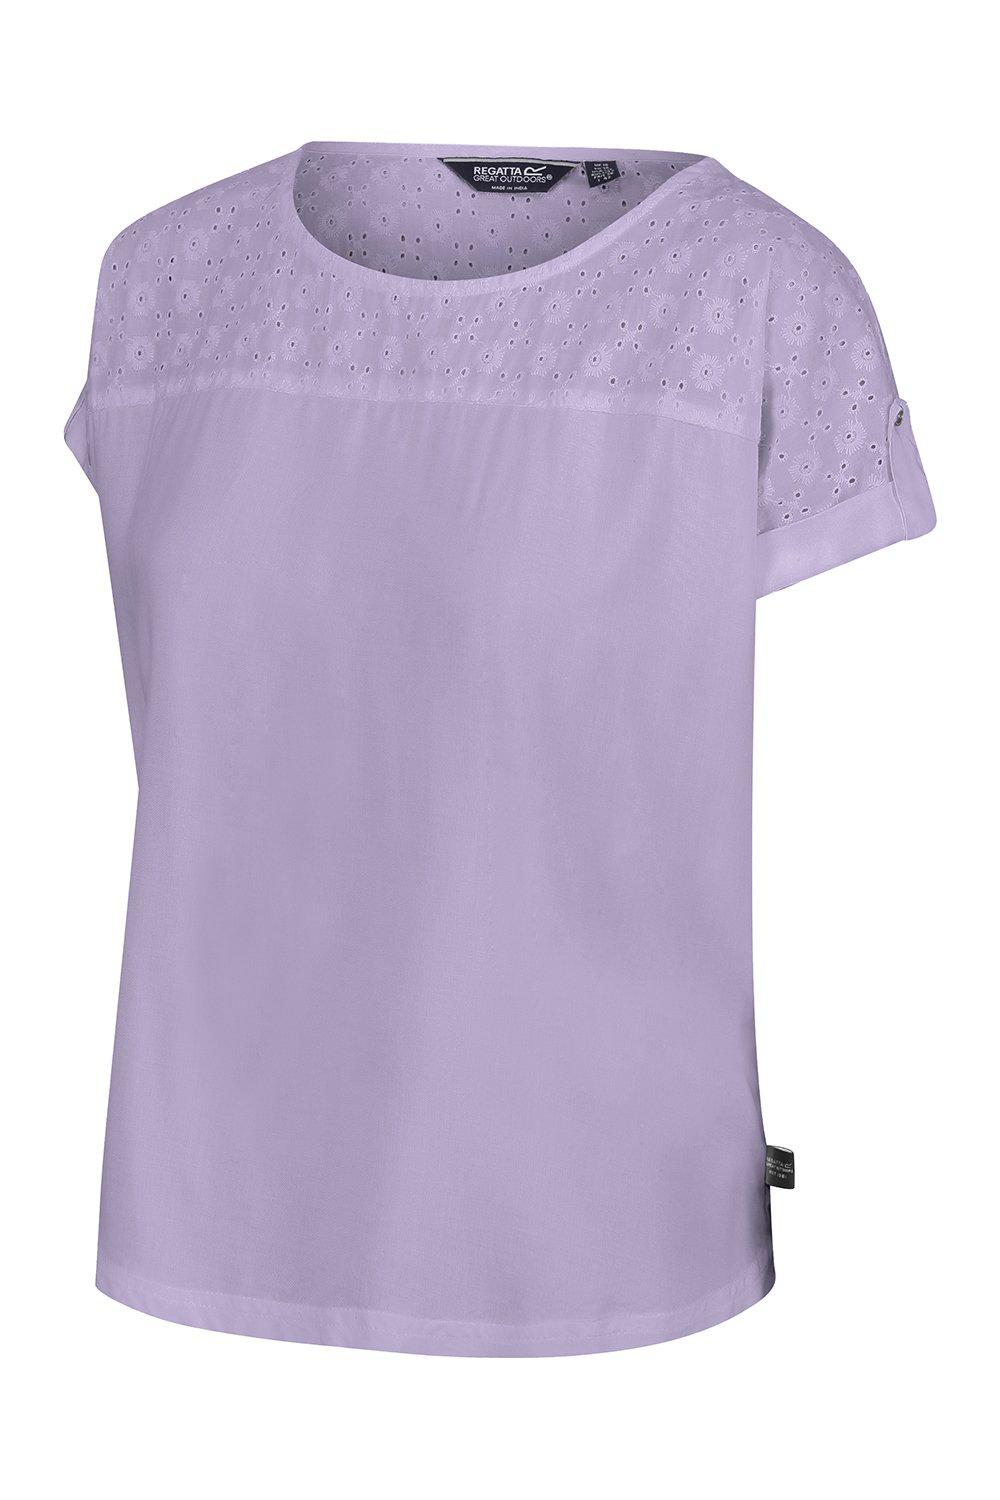 Хлопковая рубашка Jaida с короткими рукавами из прохладной ткани Regatta, фиолетовый топ твоё летний 42 размер